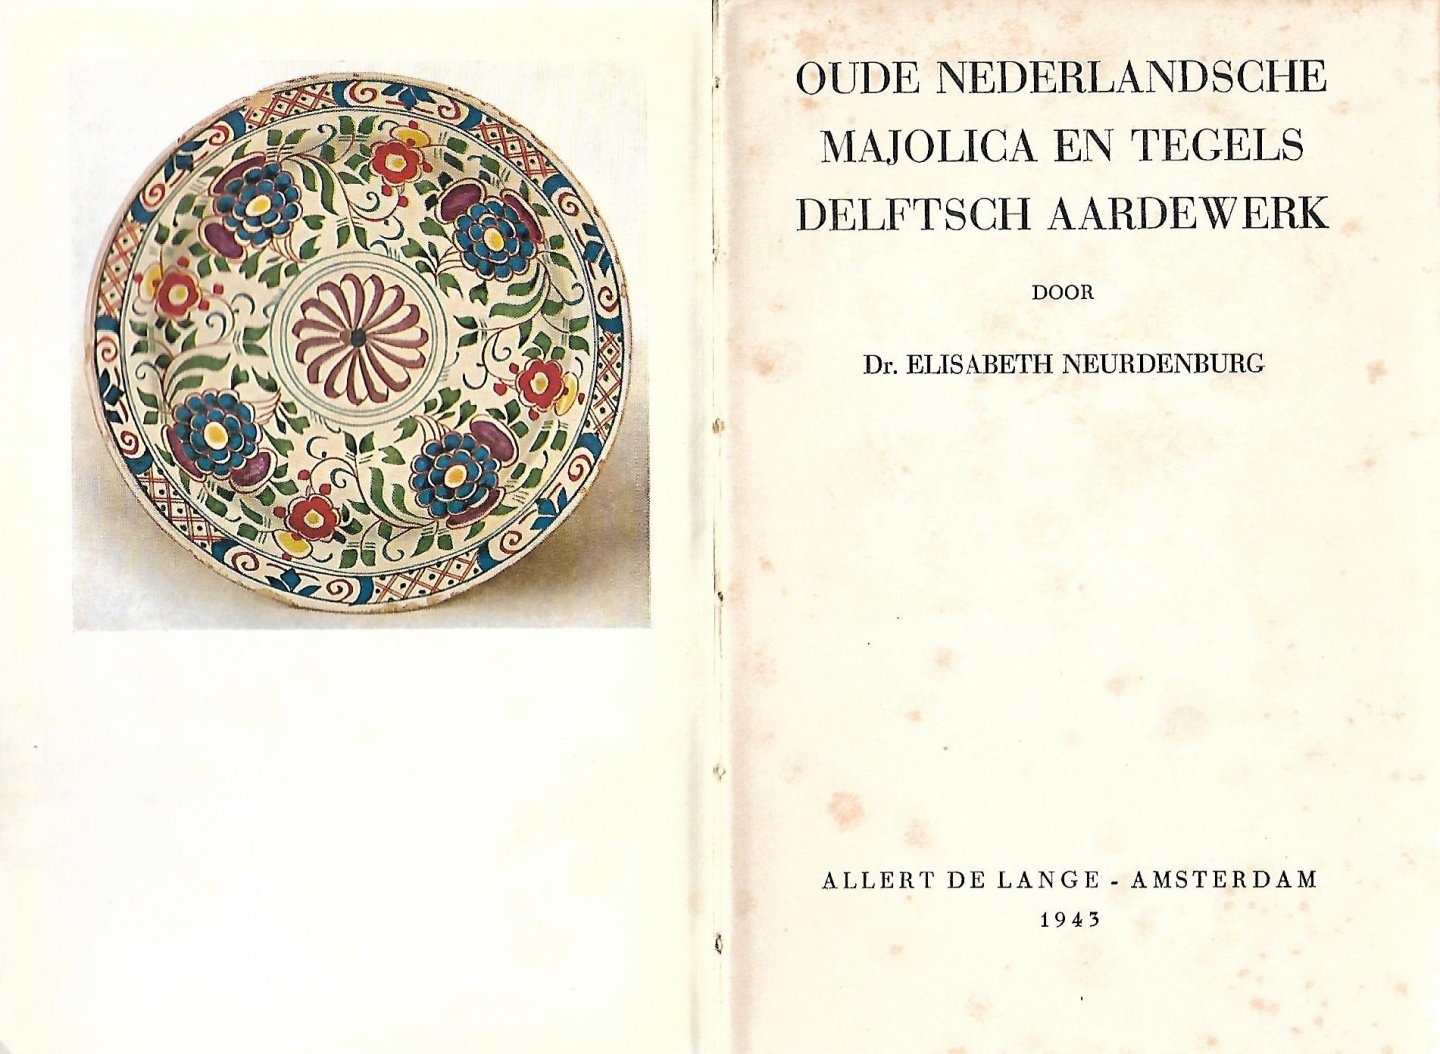 Neurdenburg, Elisabeth - Oude Nederlandsche majolica en tegels Delftsch aardewerk